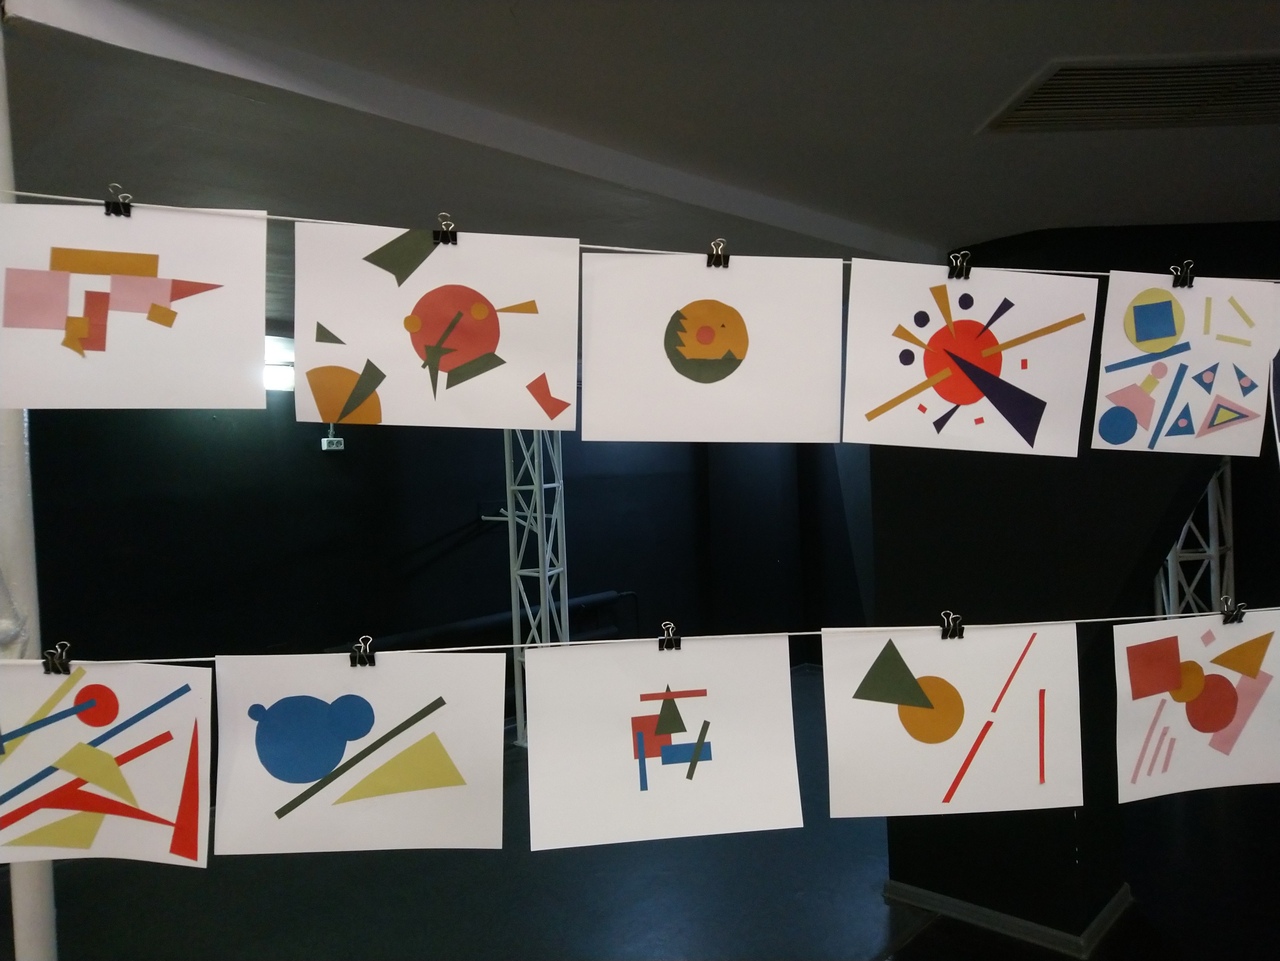 Ивановские школьники создают мультфильм, который покажут на закрытии «Зеркала» (ФОТО)